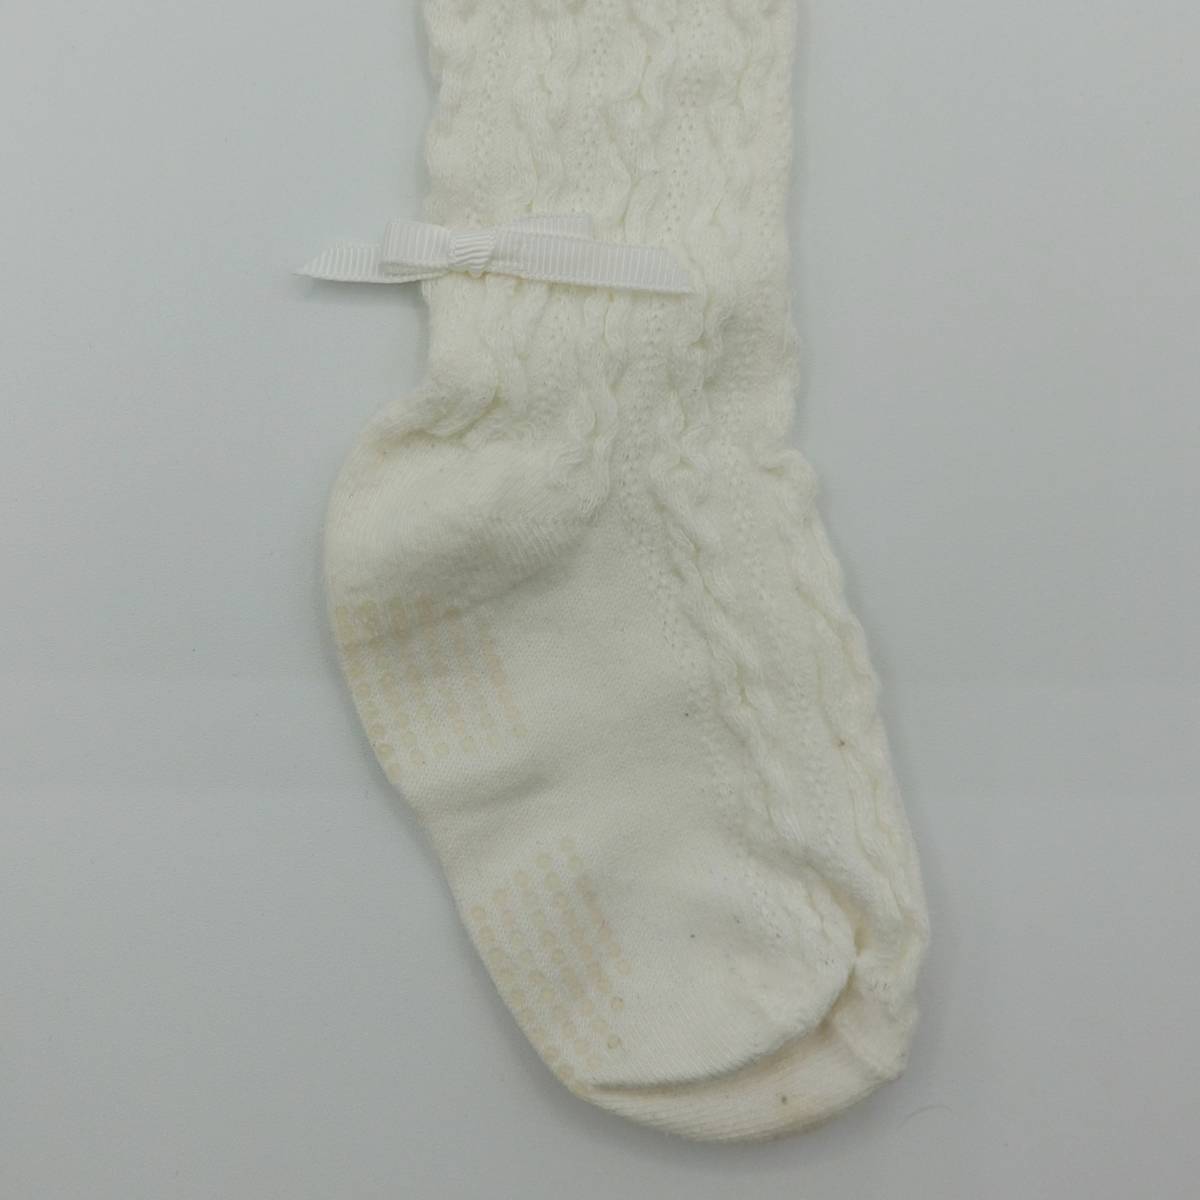  белый трико носки ребенок одежда детская одежда 95 размер лента предотвращение скольжения имеется 